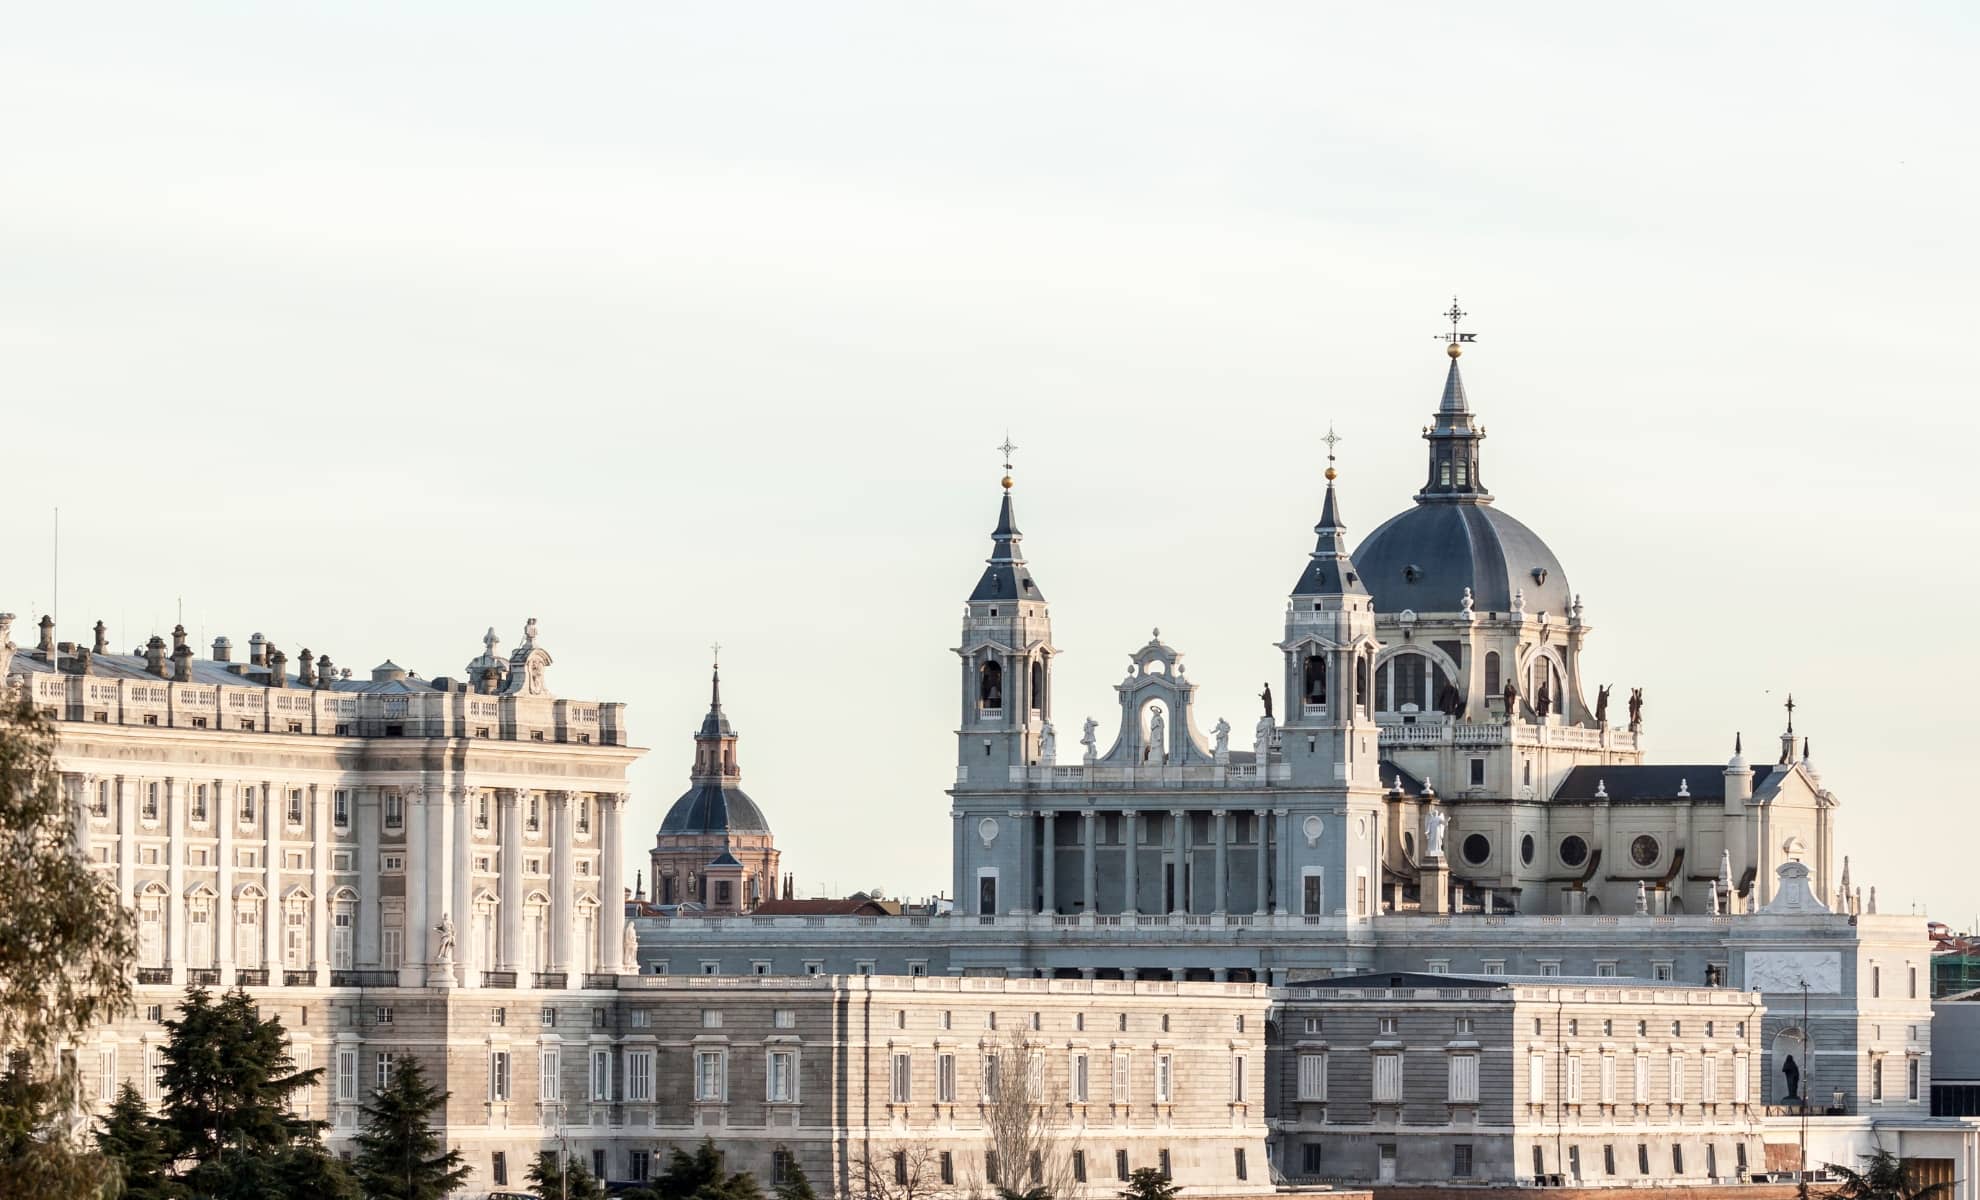 La cathédrale de l'Almudena, Madrid